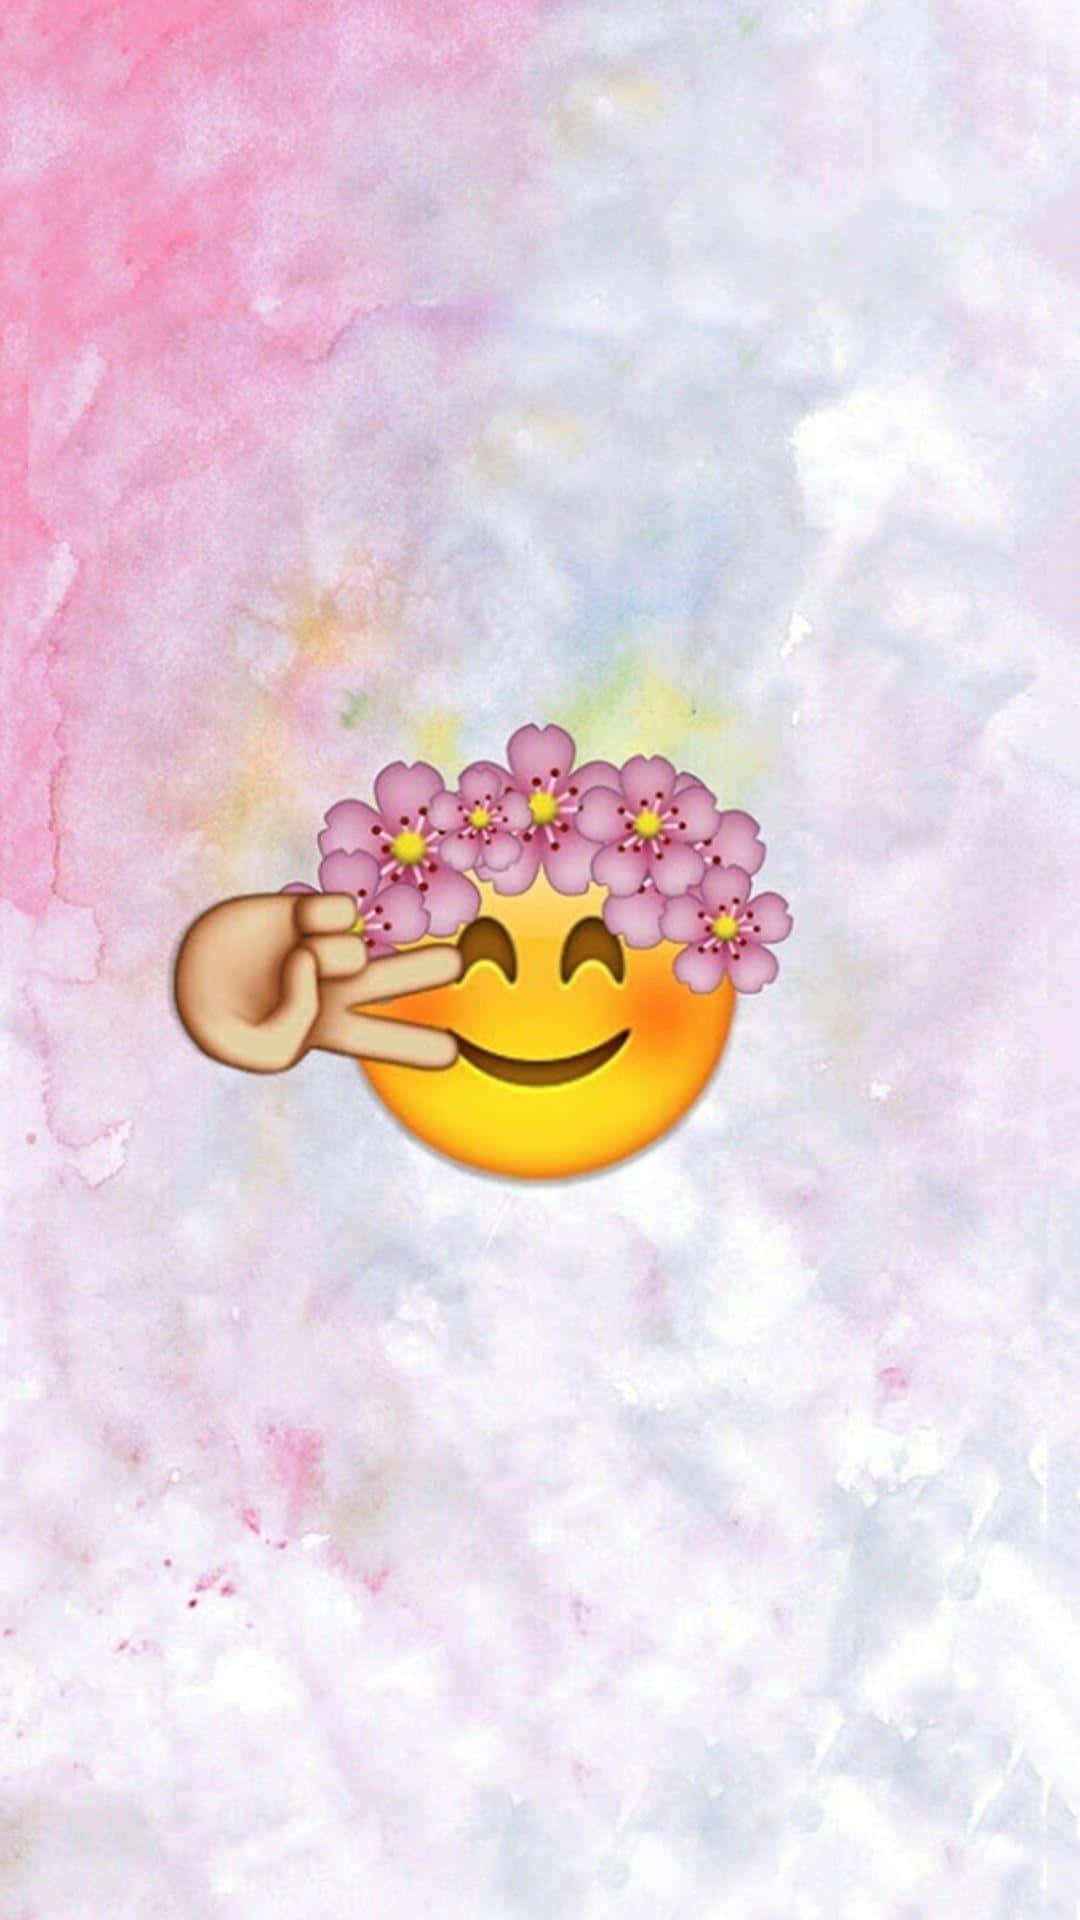 Cute Emoji Making A Peace Sign